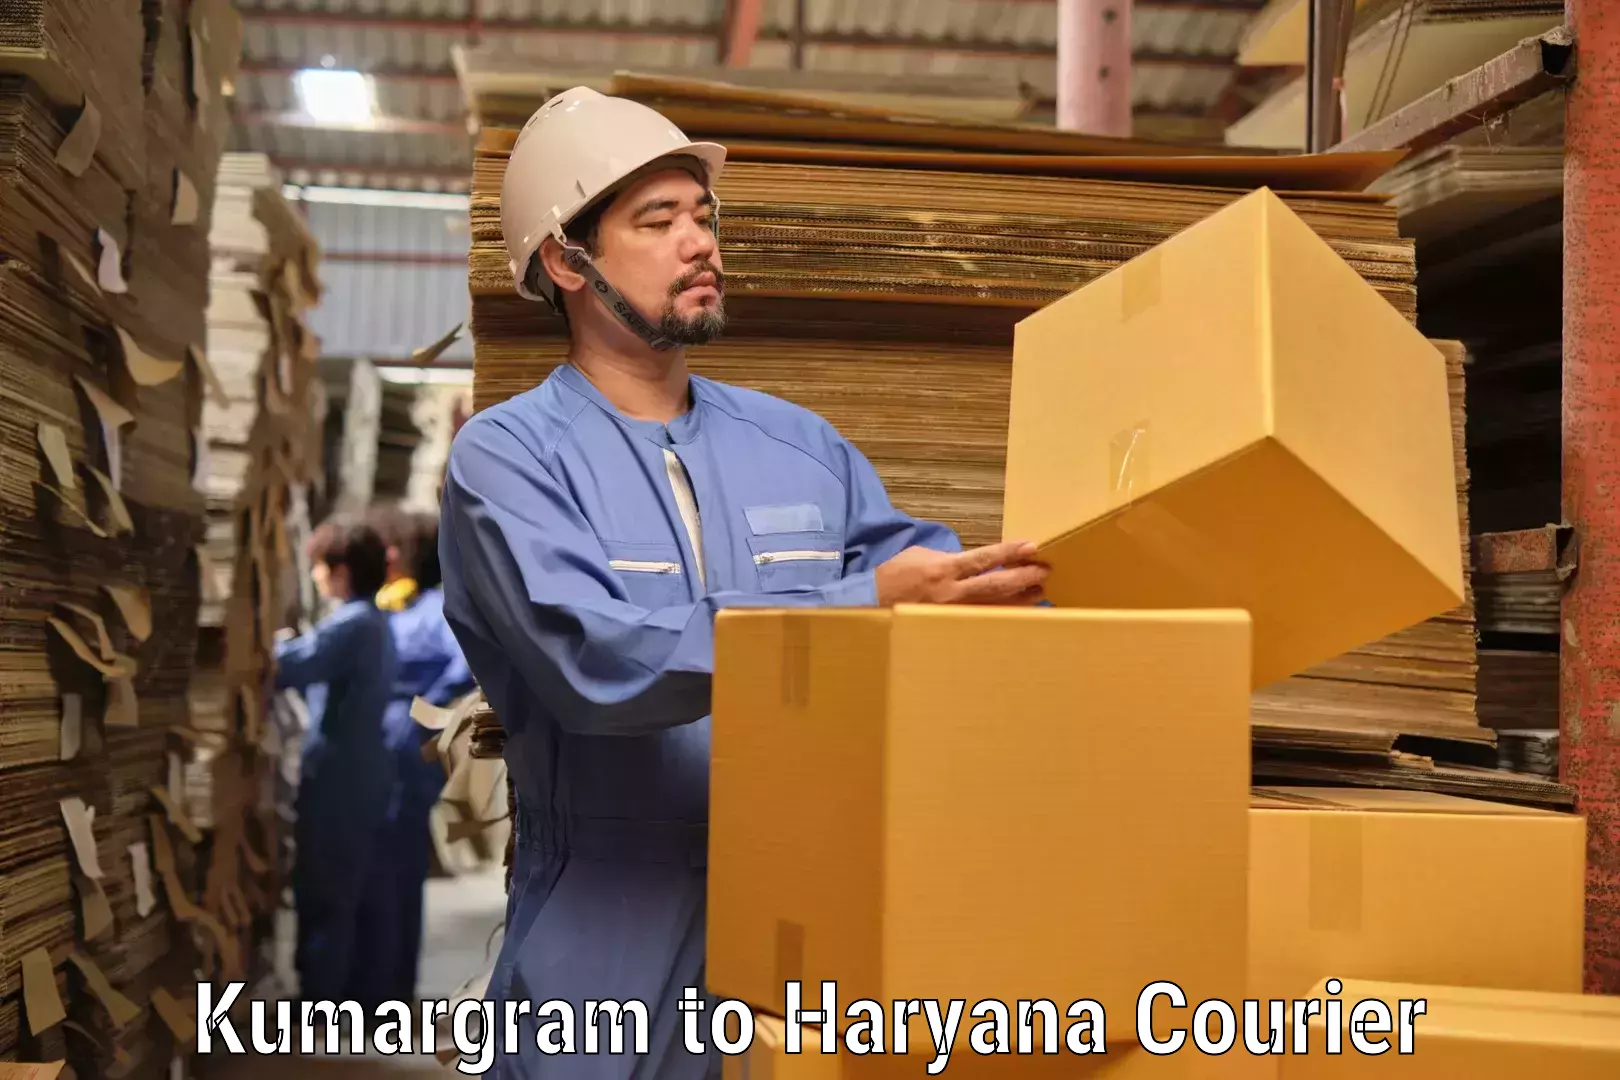 Large package courier Kumargram to IIIT Sonepat